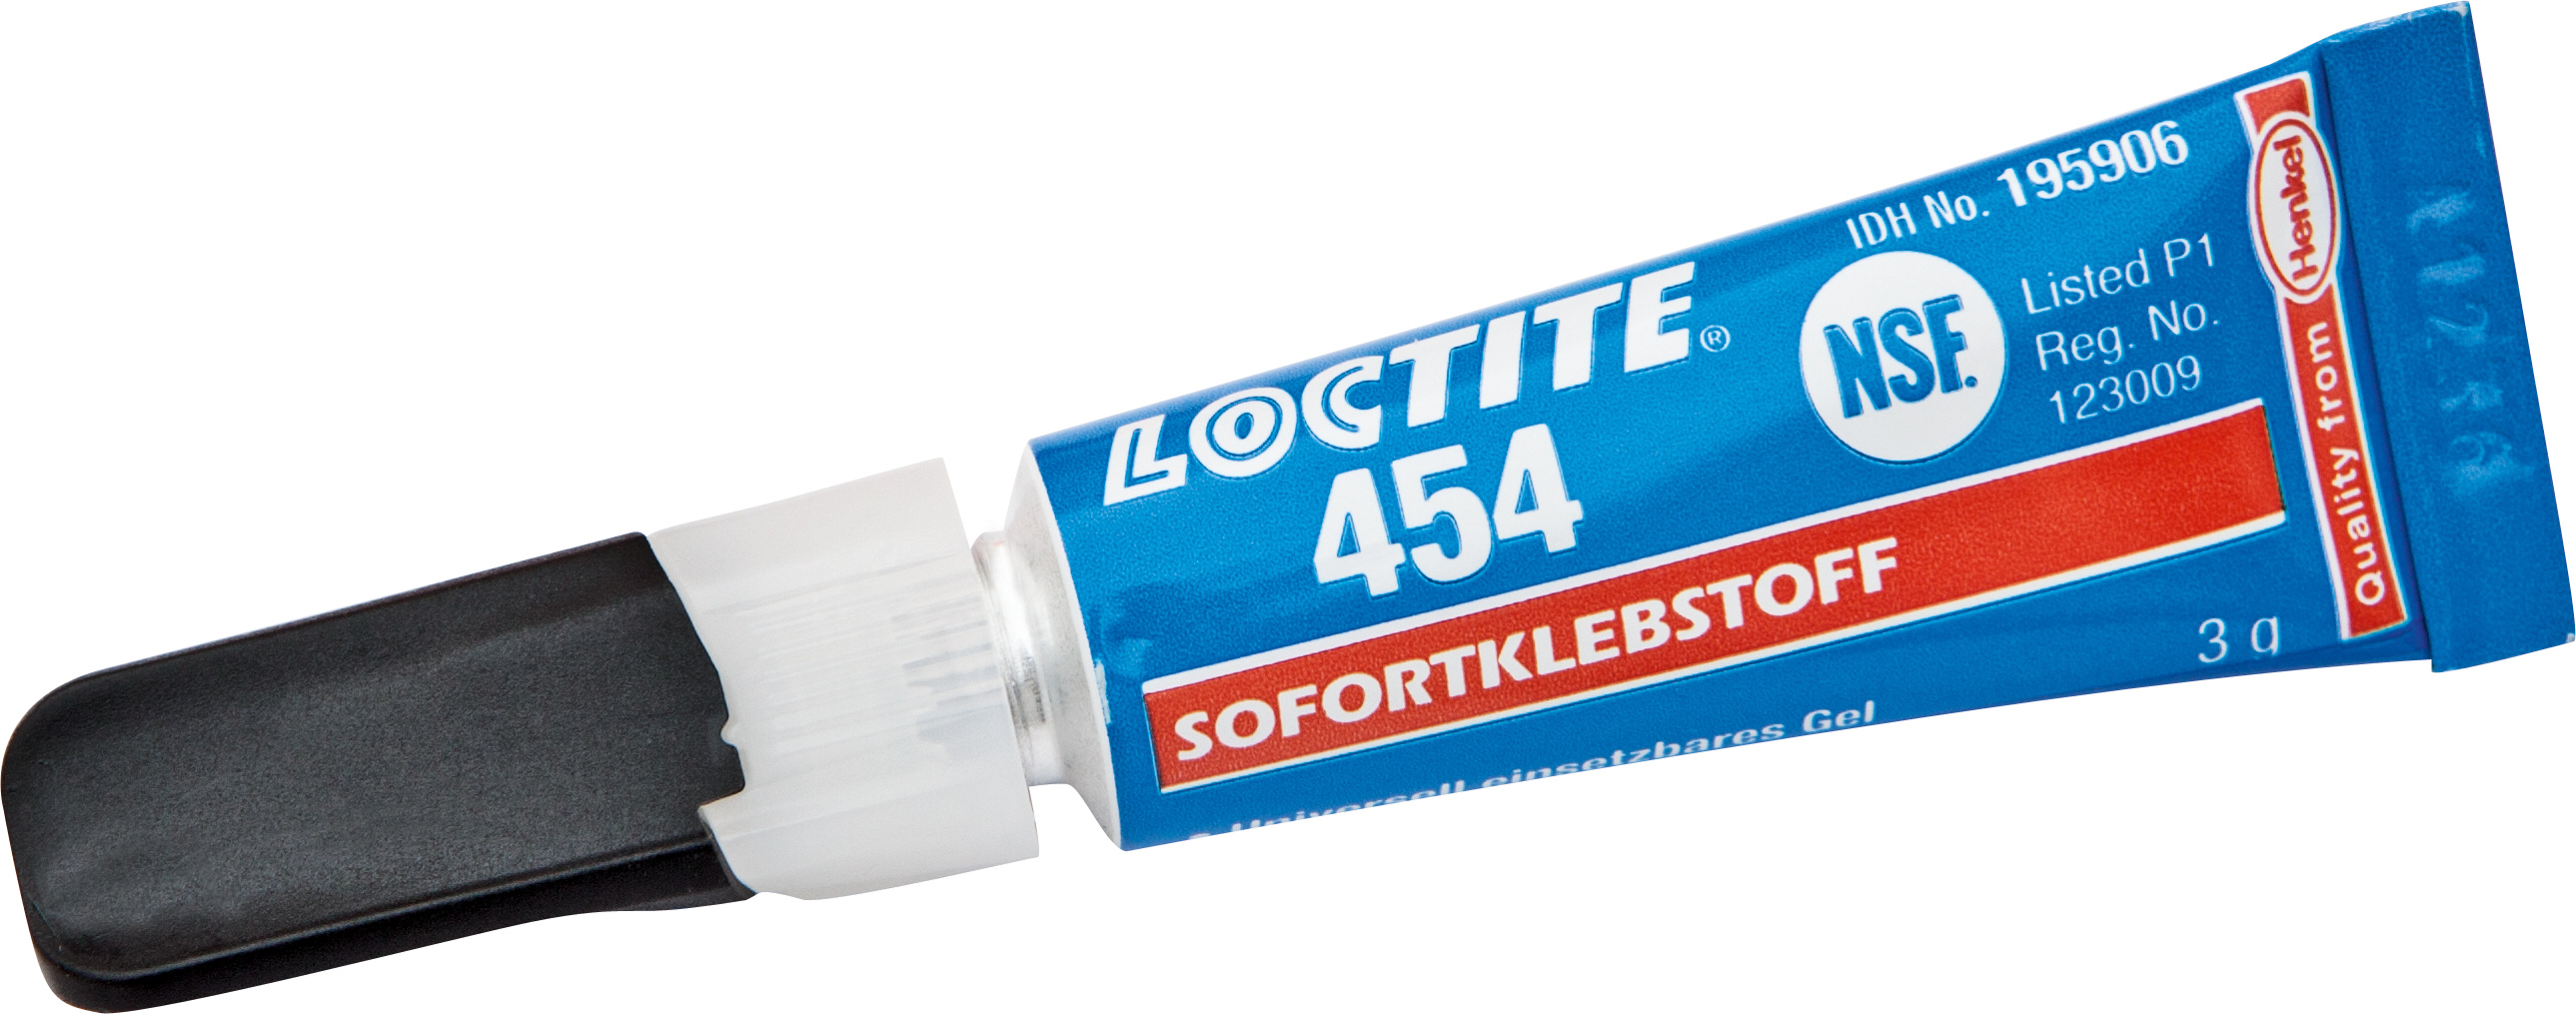 Sofortklebstoff Loctite 454 Gel